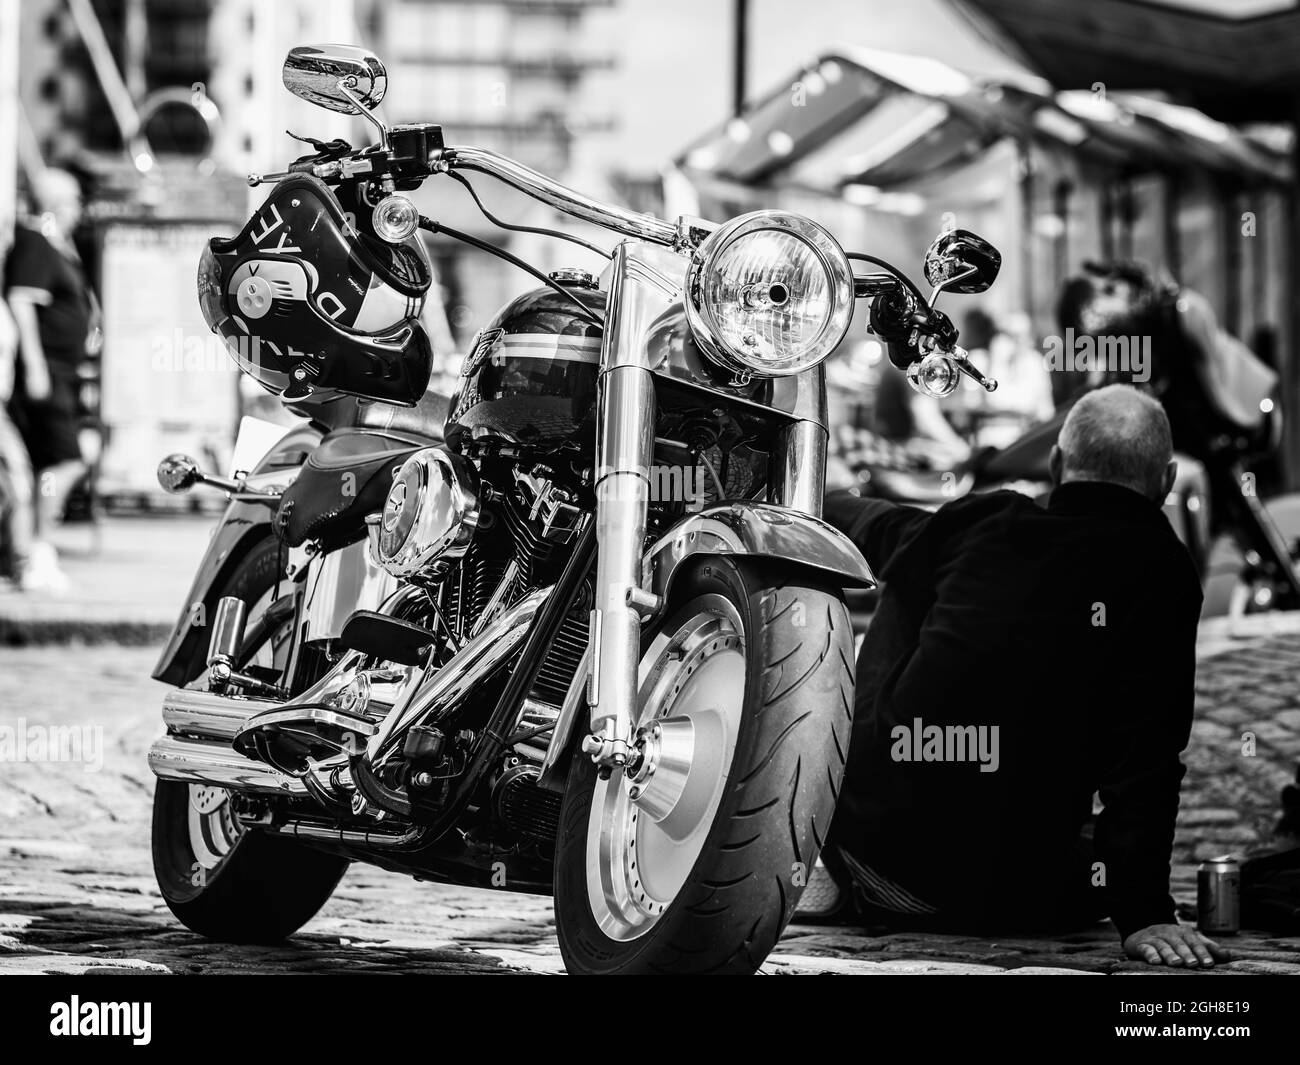 Photographie de moto, Harley-Davidson en noir et blanc Banque D'Images